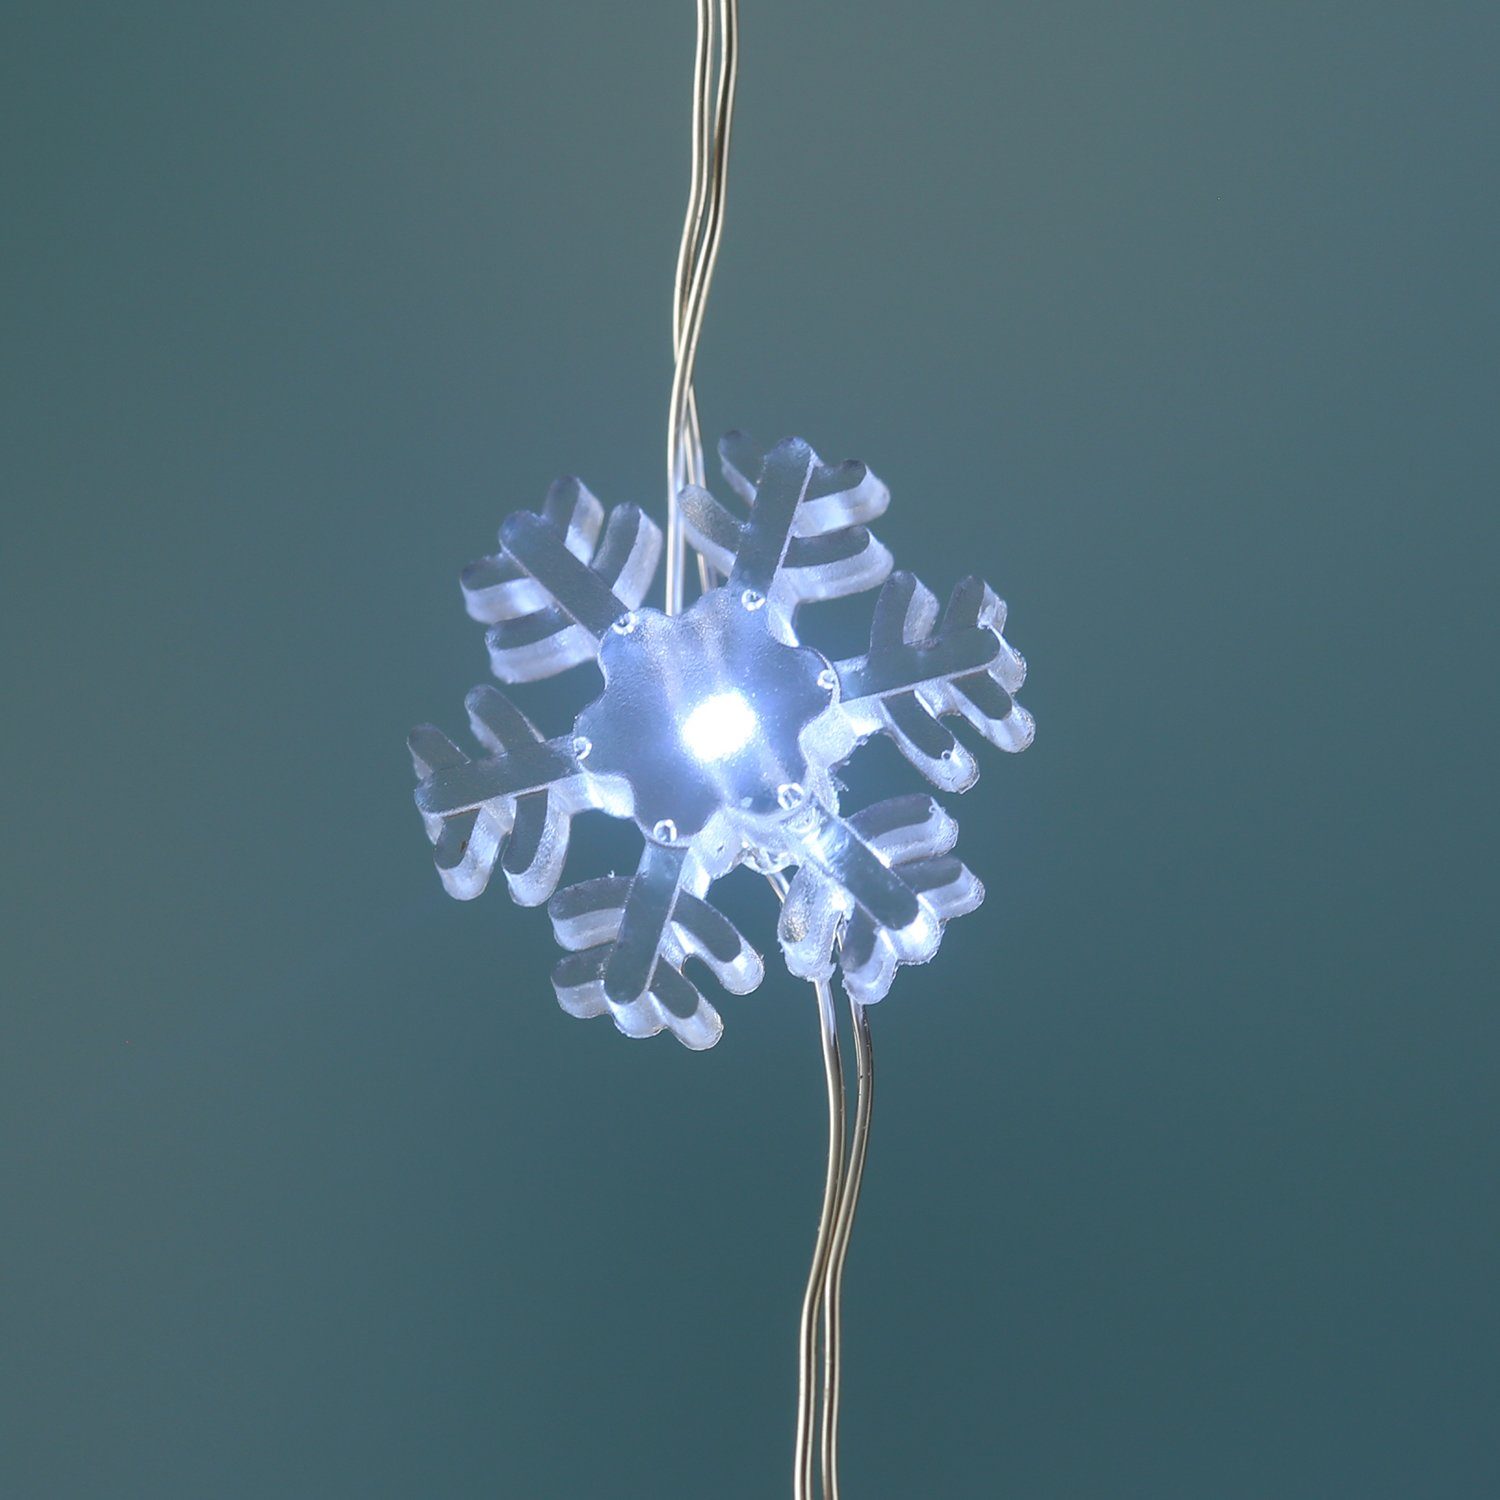 Timer MARELIDA 20-flammig Draht Eisblume Schneeflocken 0,95m Weihnachtsdeko, LED-Lichterkette 20LED